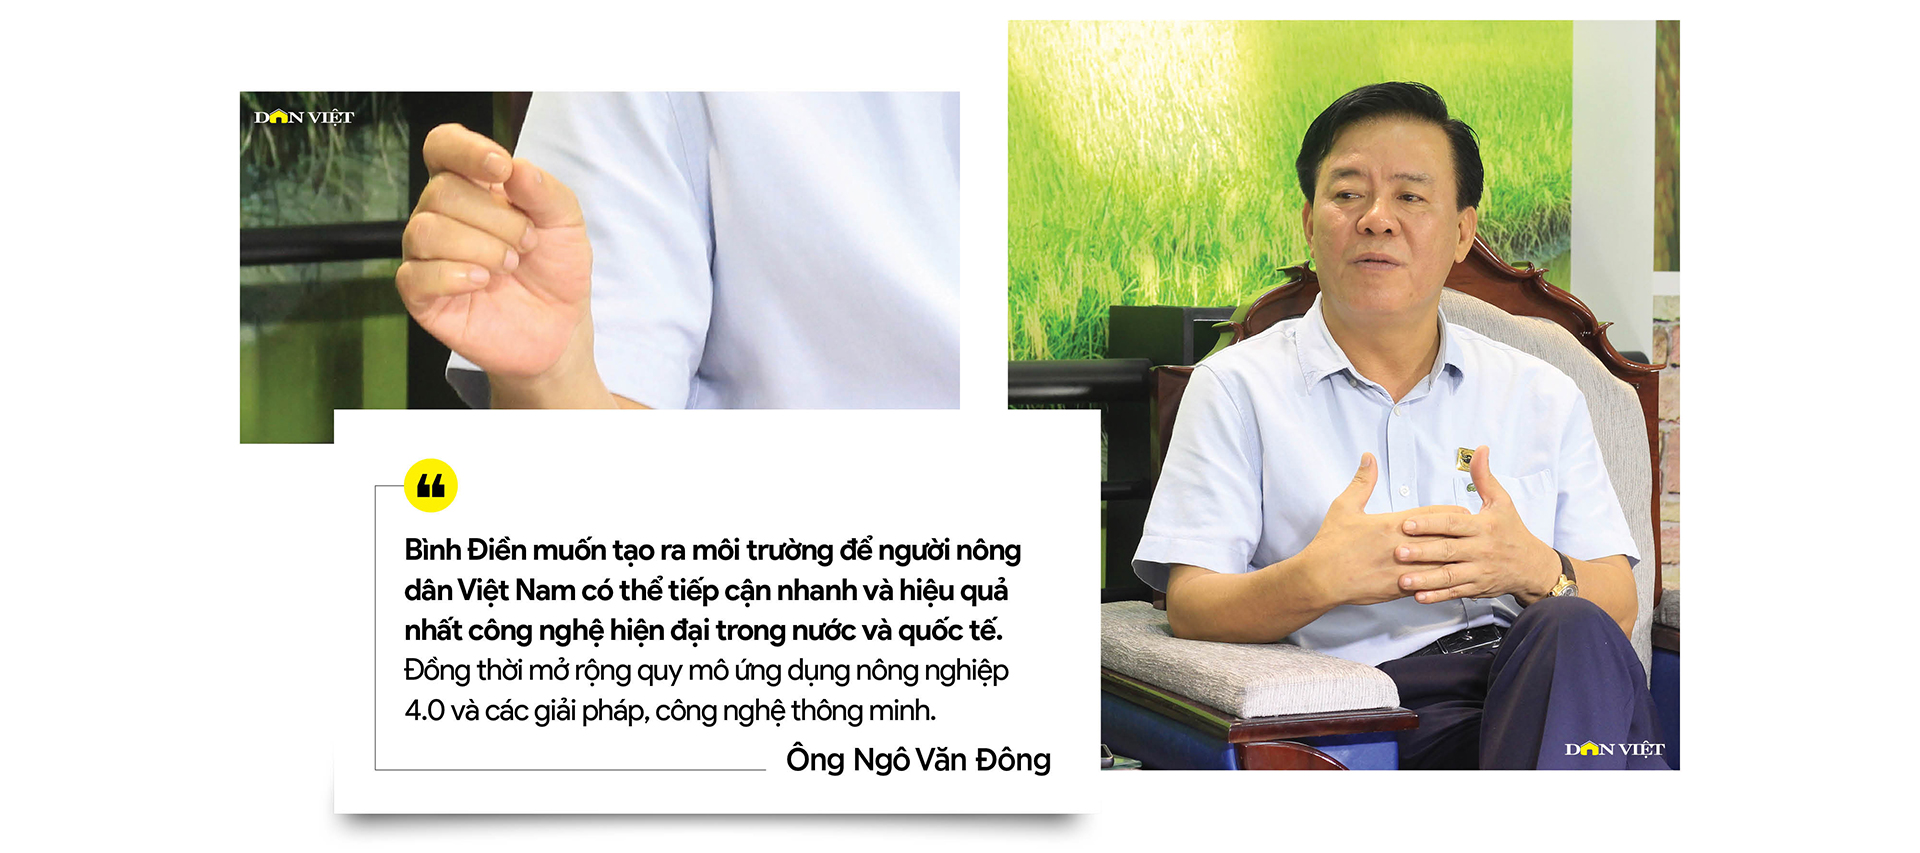 Tổng Giám đốc Bình Điền - ông Ngô Văn Đông: Đặt cho mình sứ mệnh đồng hành và chia sẻ với nông dân - Ảnh 5.